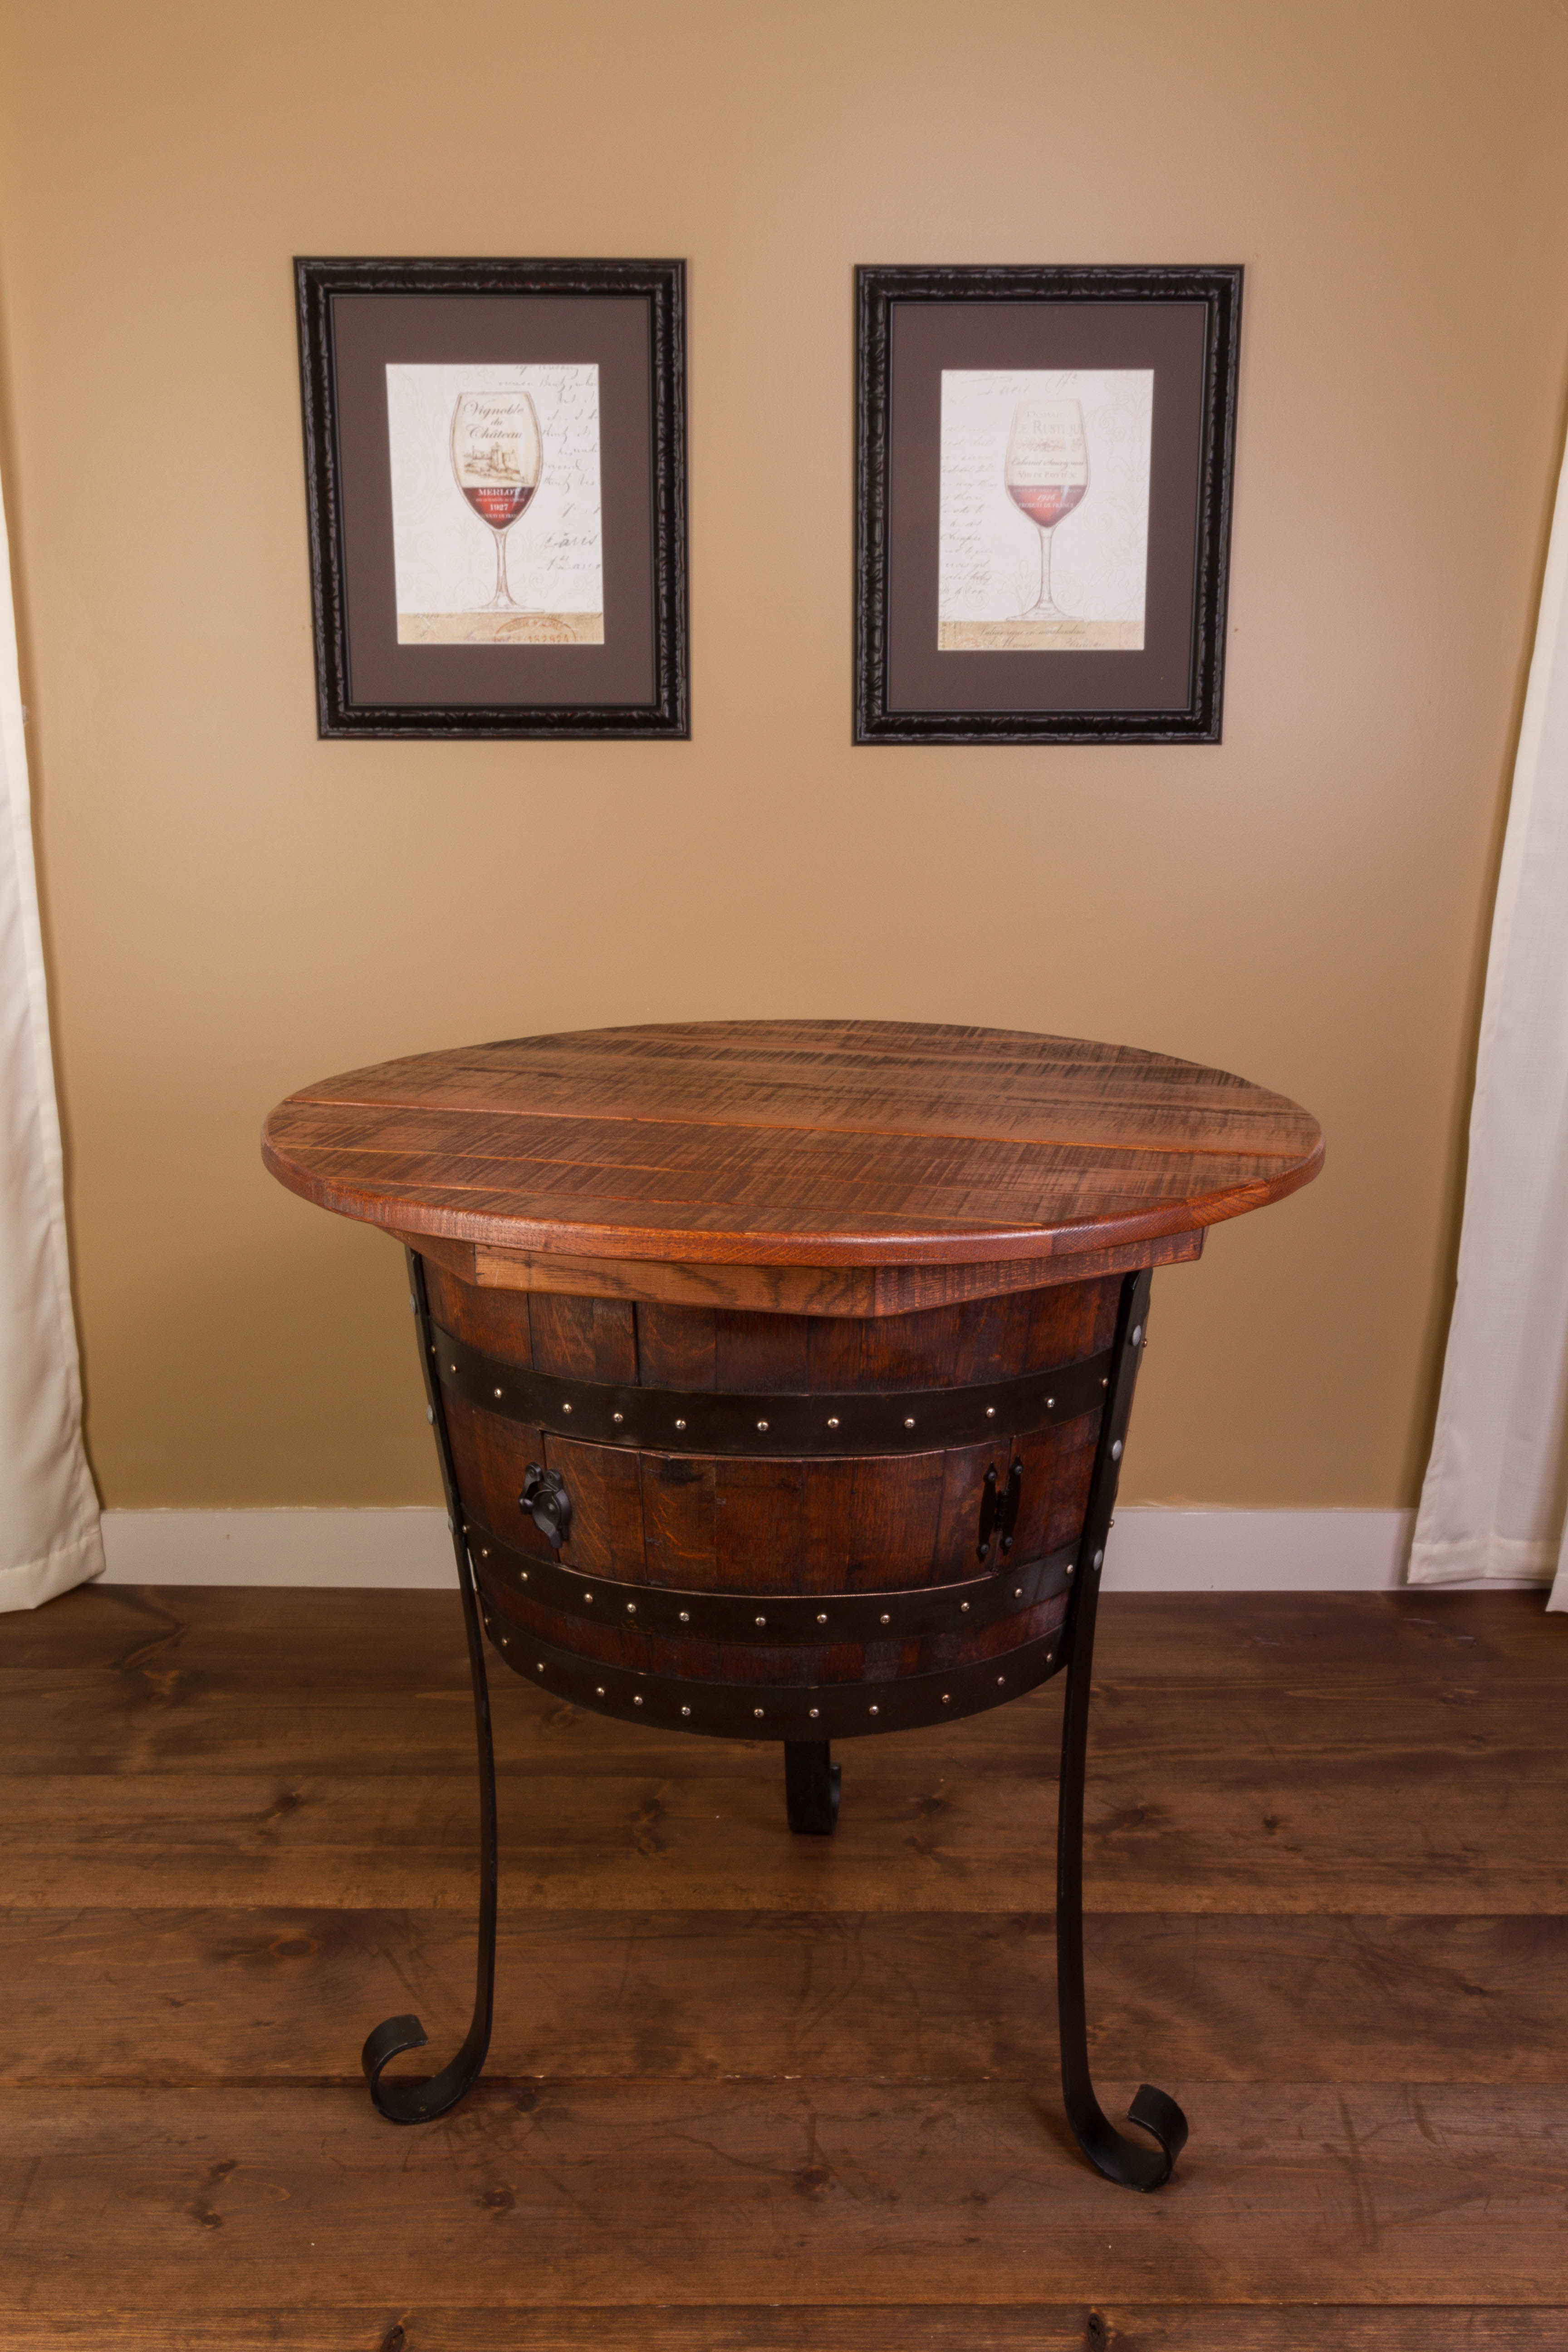 Vintage Oak Half Barrel Table with Cabinet